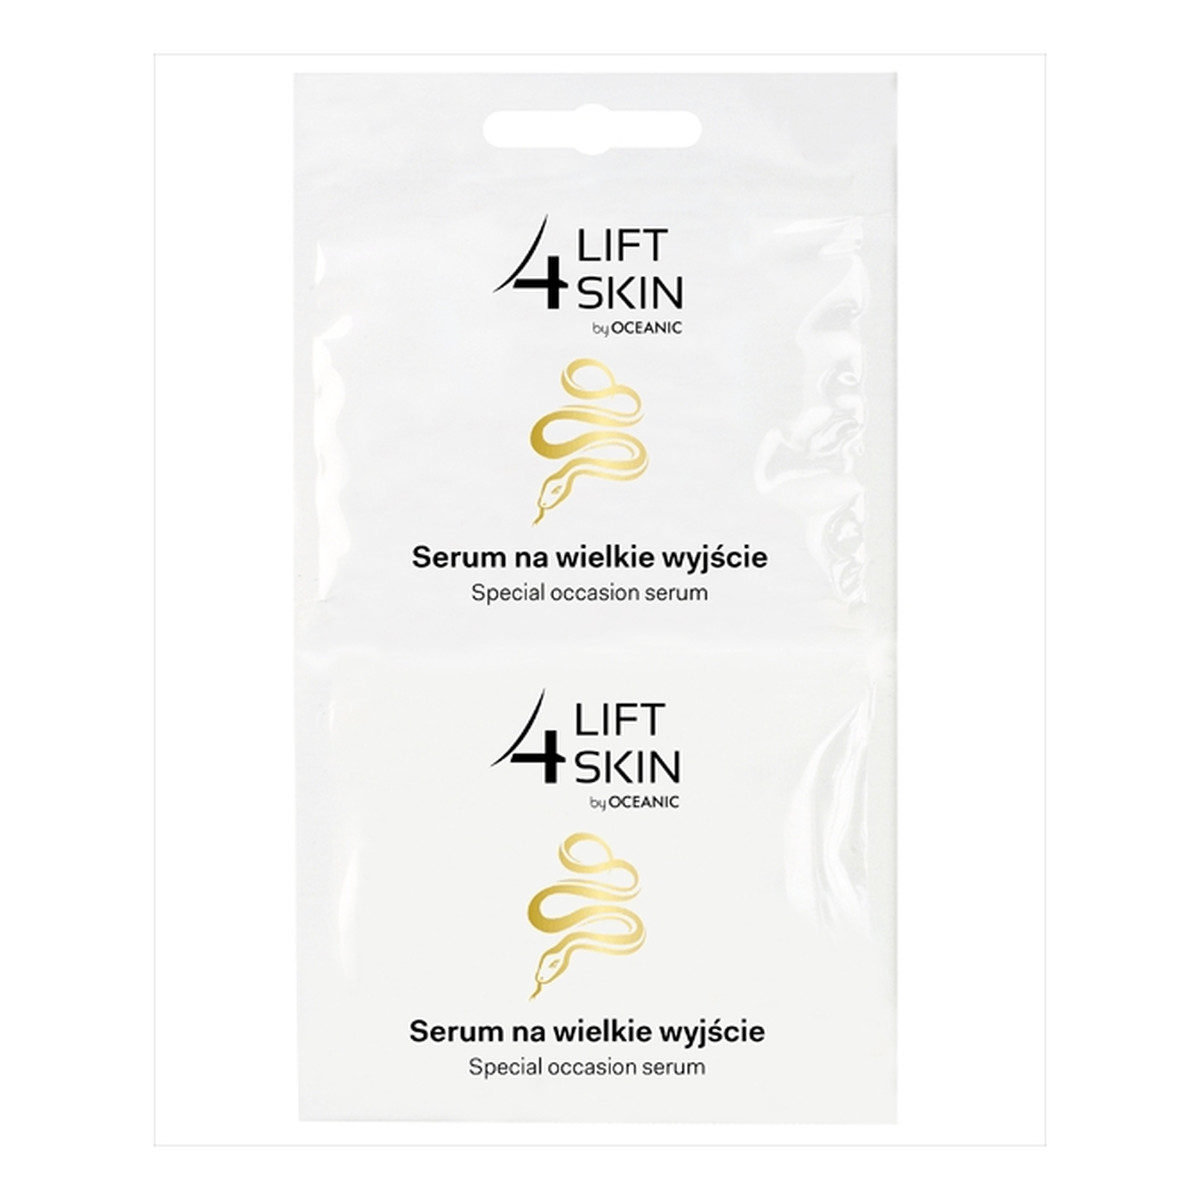 Lift 4 Skin Serum na wielkie wyjście - saszetka